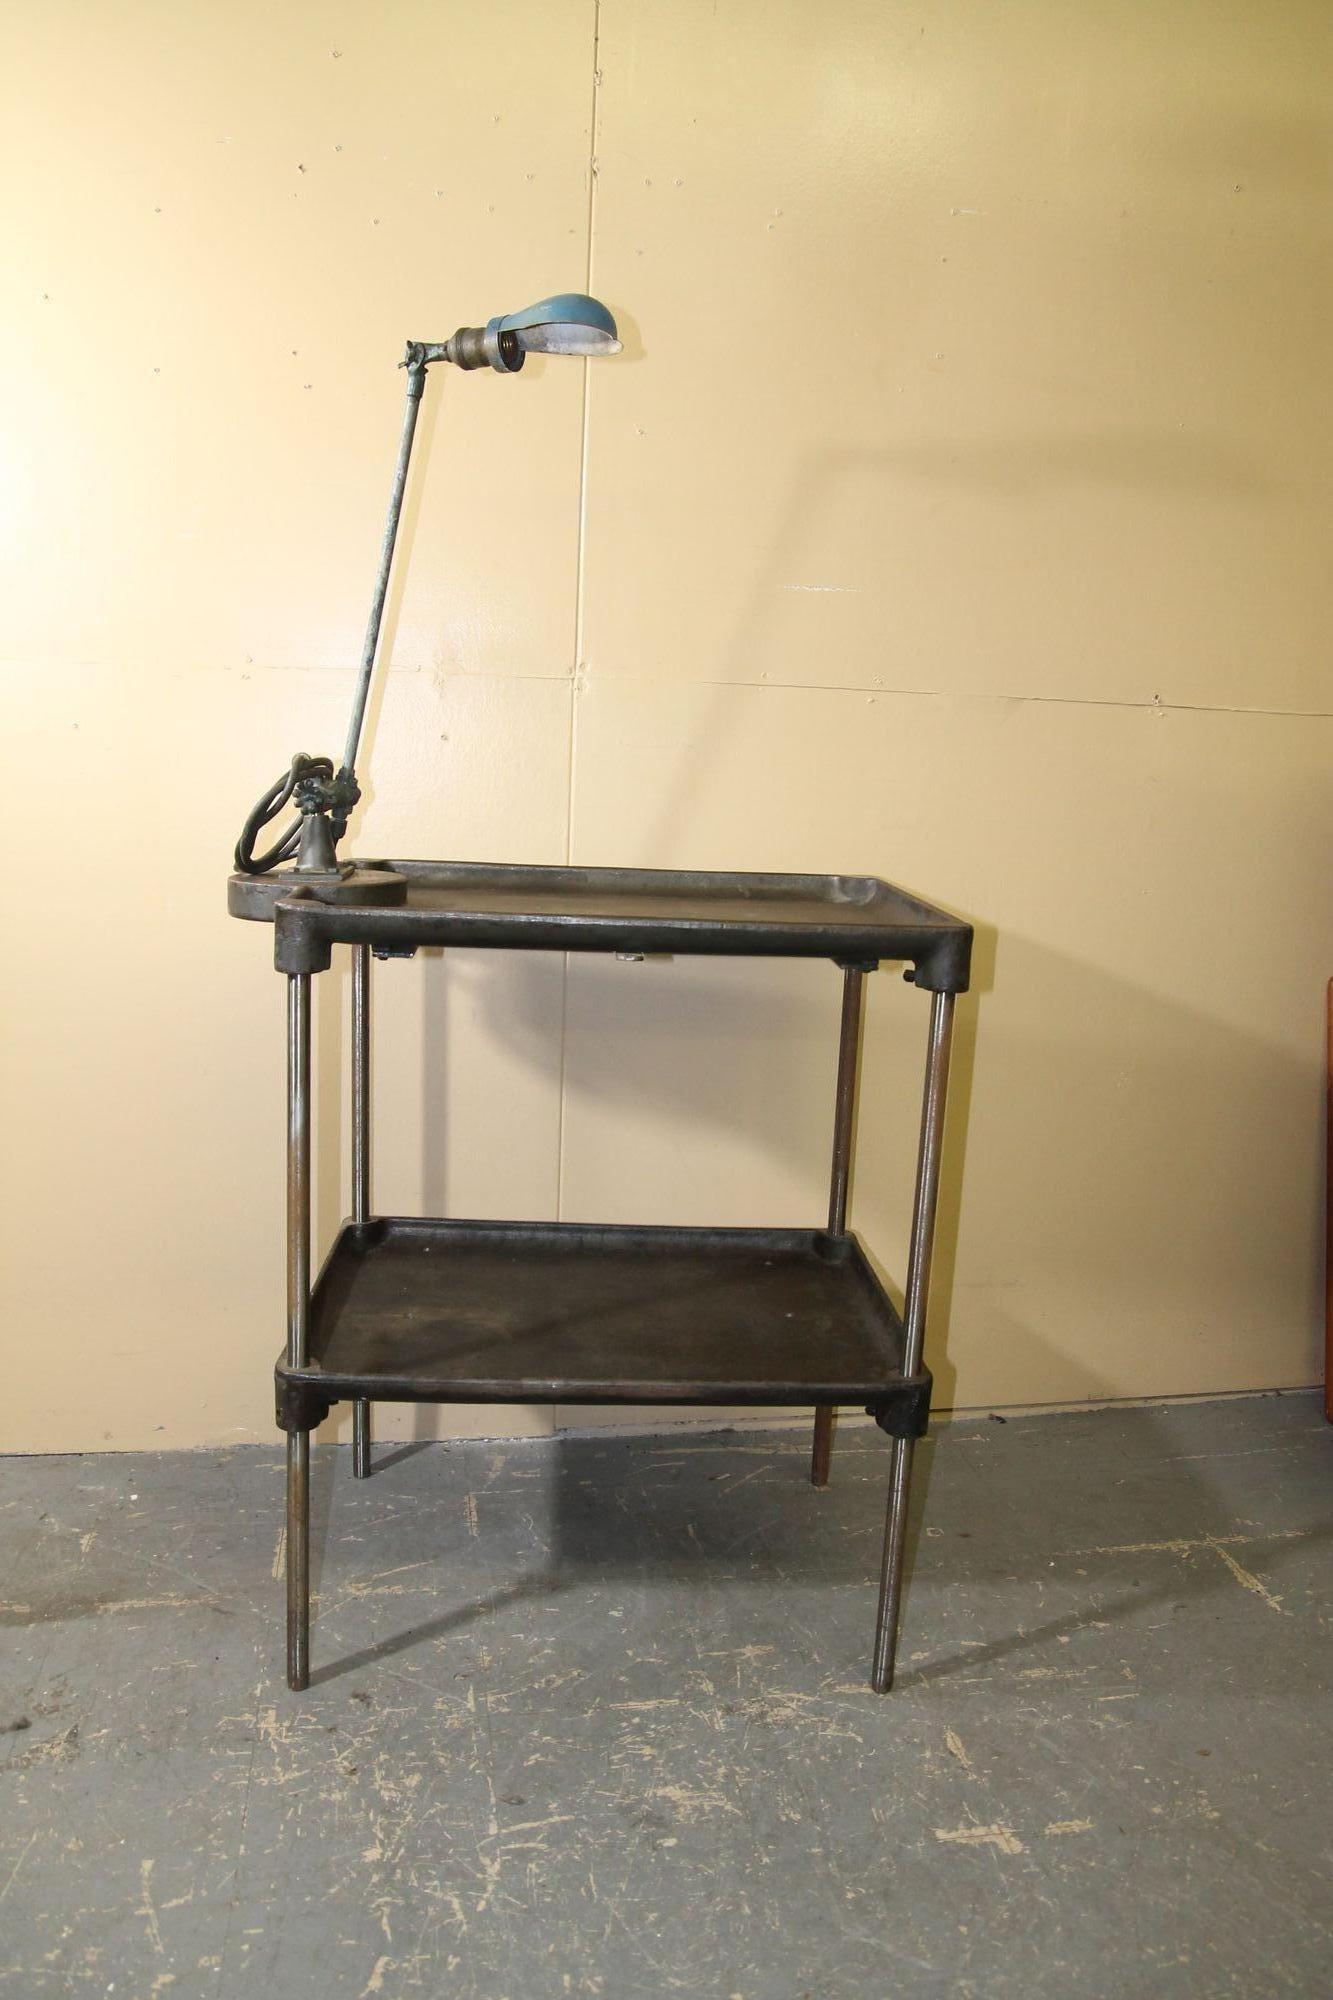 Ich freue mich, diesen großartigen Metall-Arbeitstisch mit einer OC White Arbeitsleuchte anbieten zu können, die daran befestigt ist. Diese über 100 Jahre alten Tische stammen aus einer Schraubenfabrik in Ohio. Dies ist ein schöner Beistelltisch